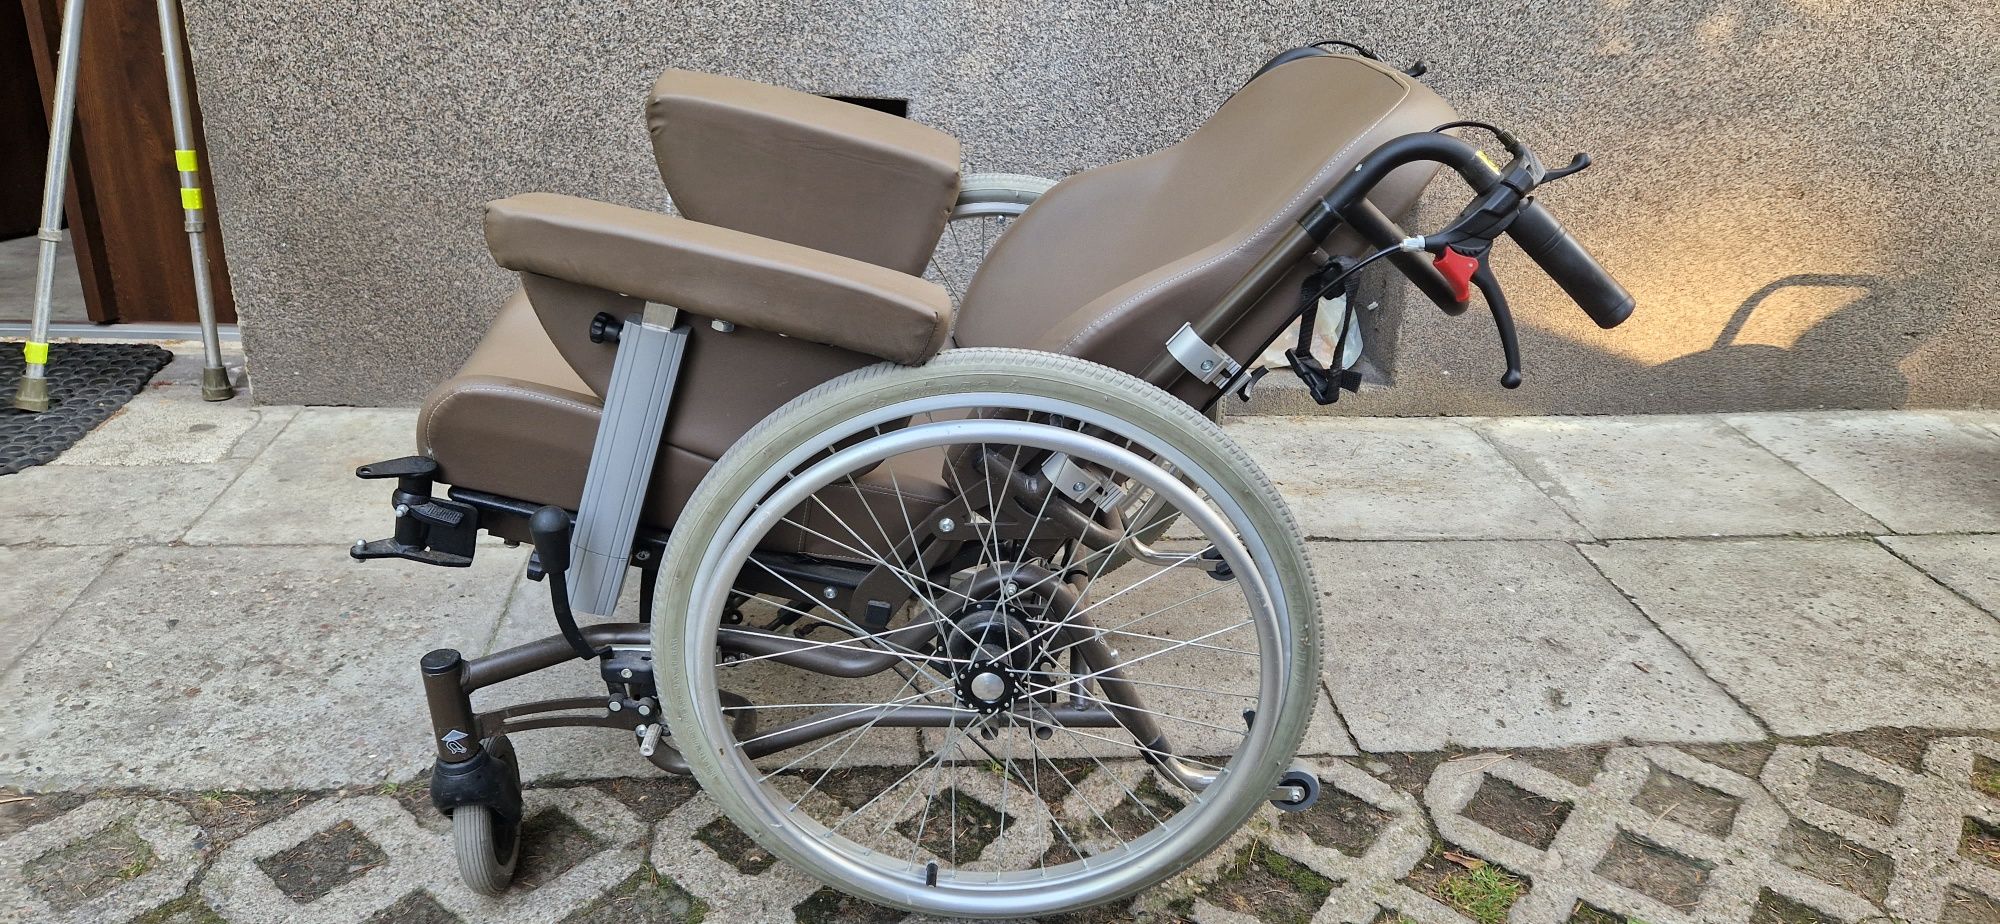 Wózek inwalidzki specjalny Inovys 2 Vermeiren